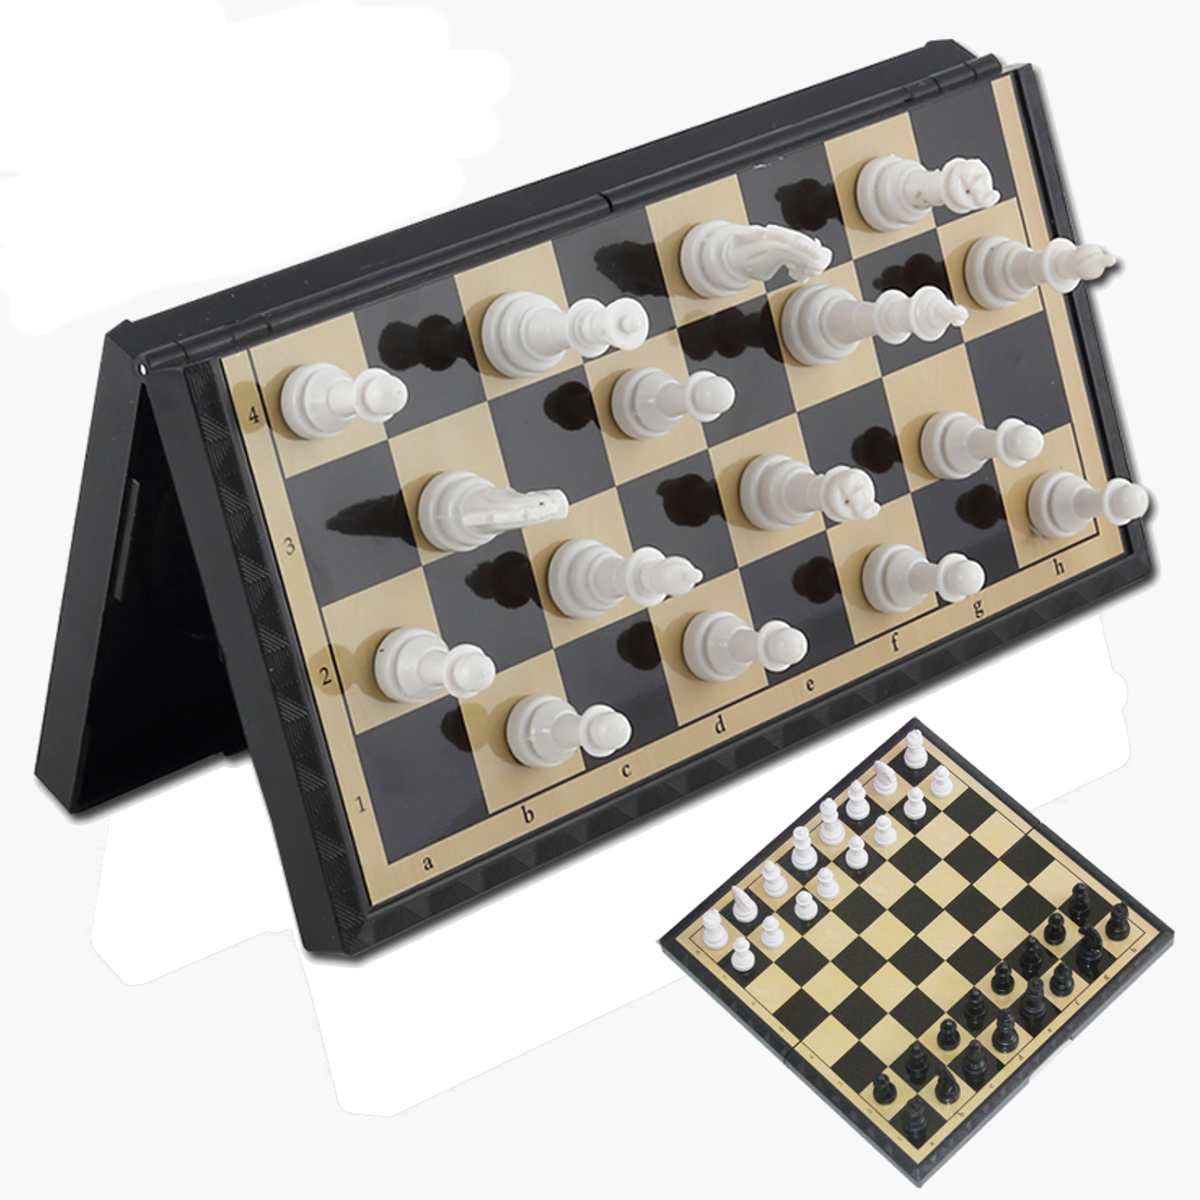 tablero de ajedrez plegable de viaje KOKOSUN Juego de billetera de ajedrez juguetes educativos/regalo para niños y adultos mini juegos de mesa 7.9 pulgadas 